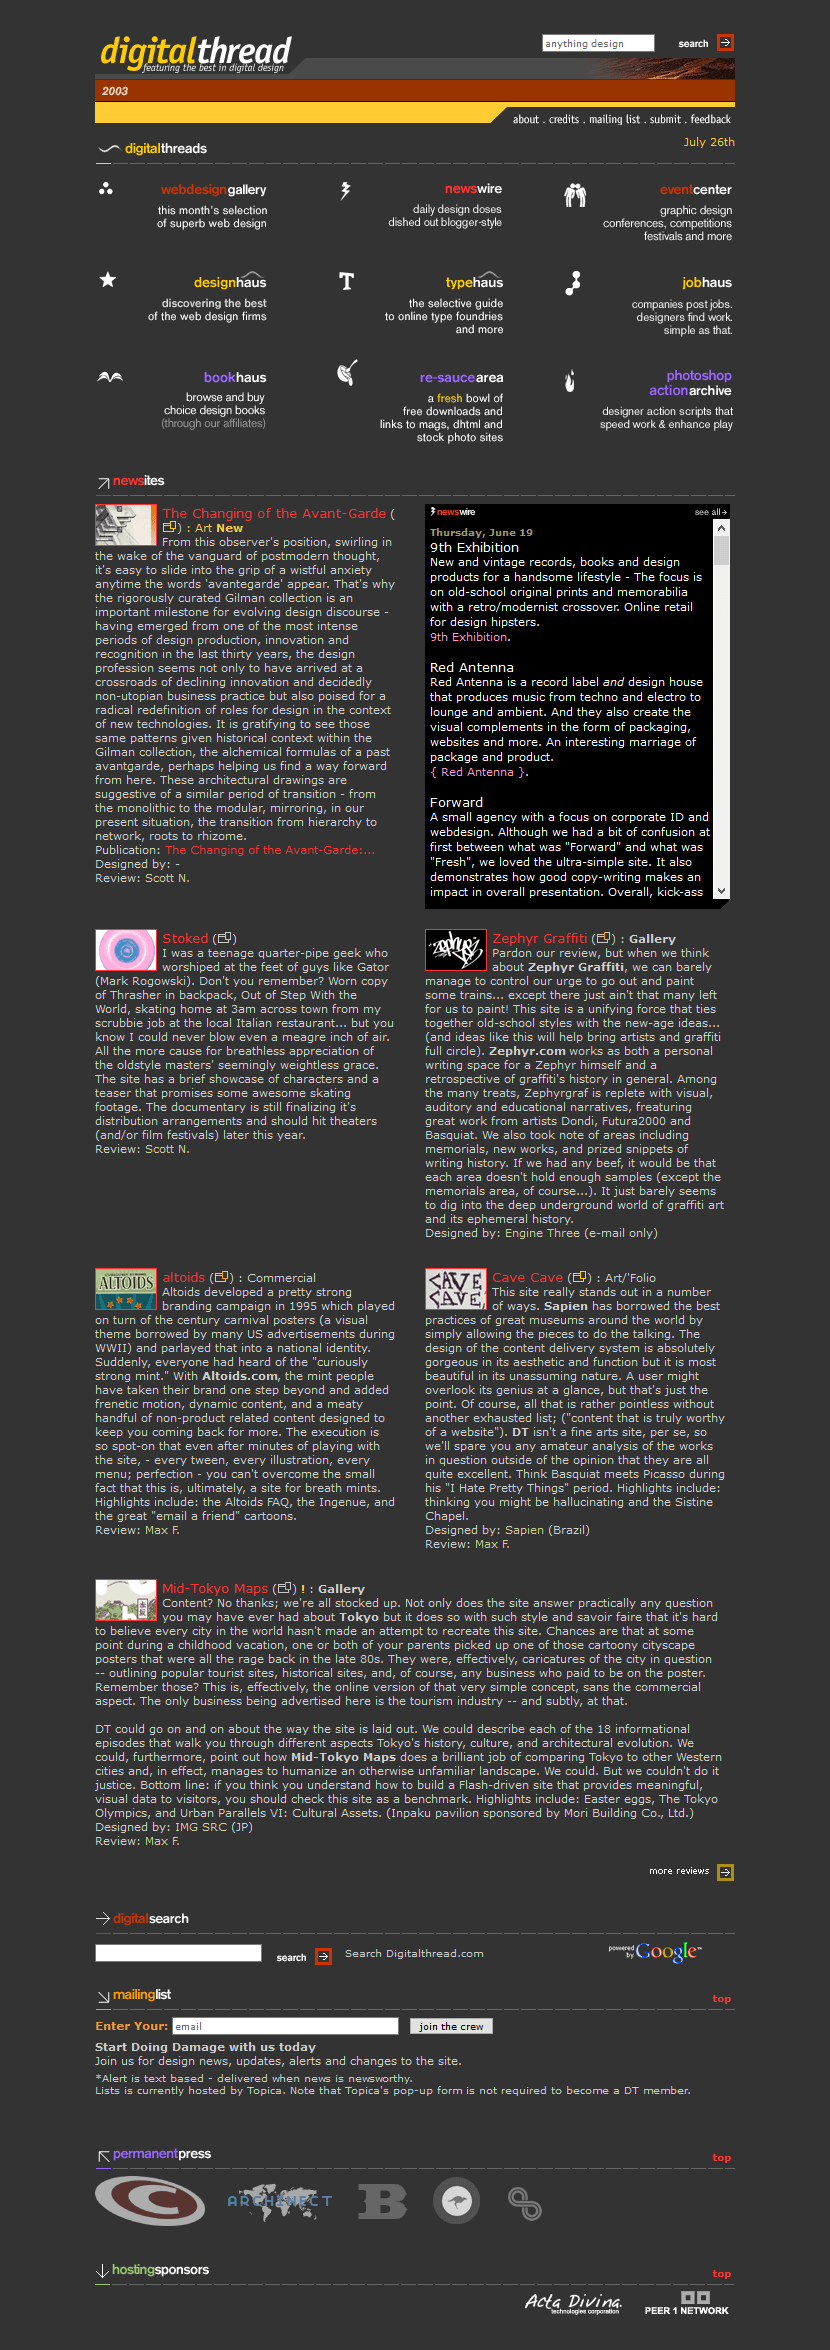 Digitalthread website in 2003